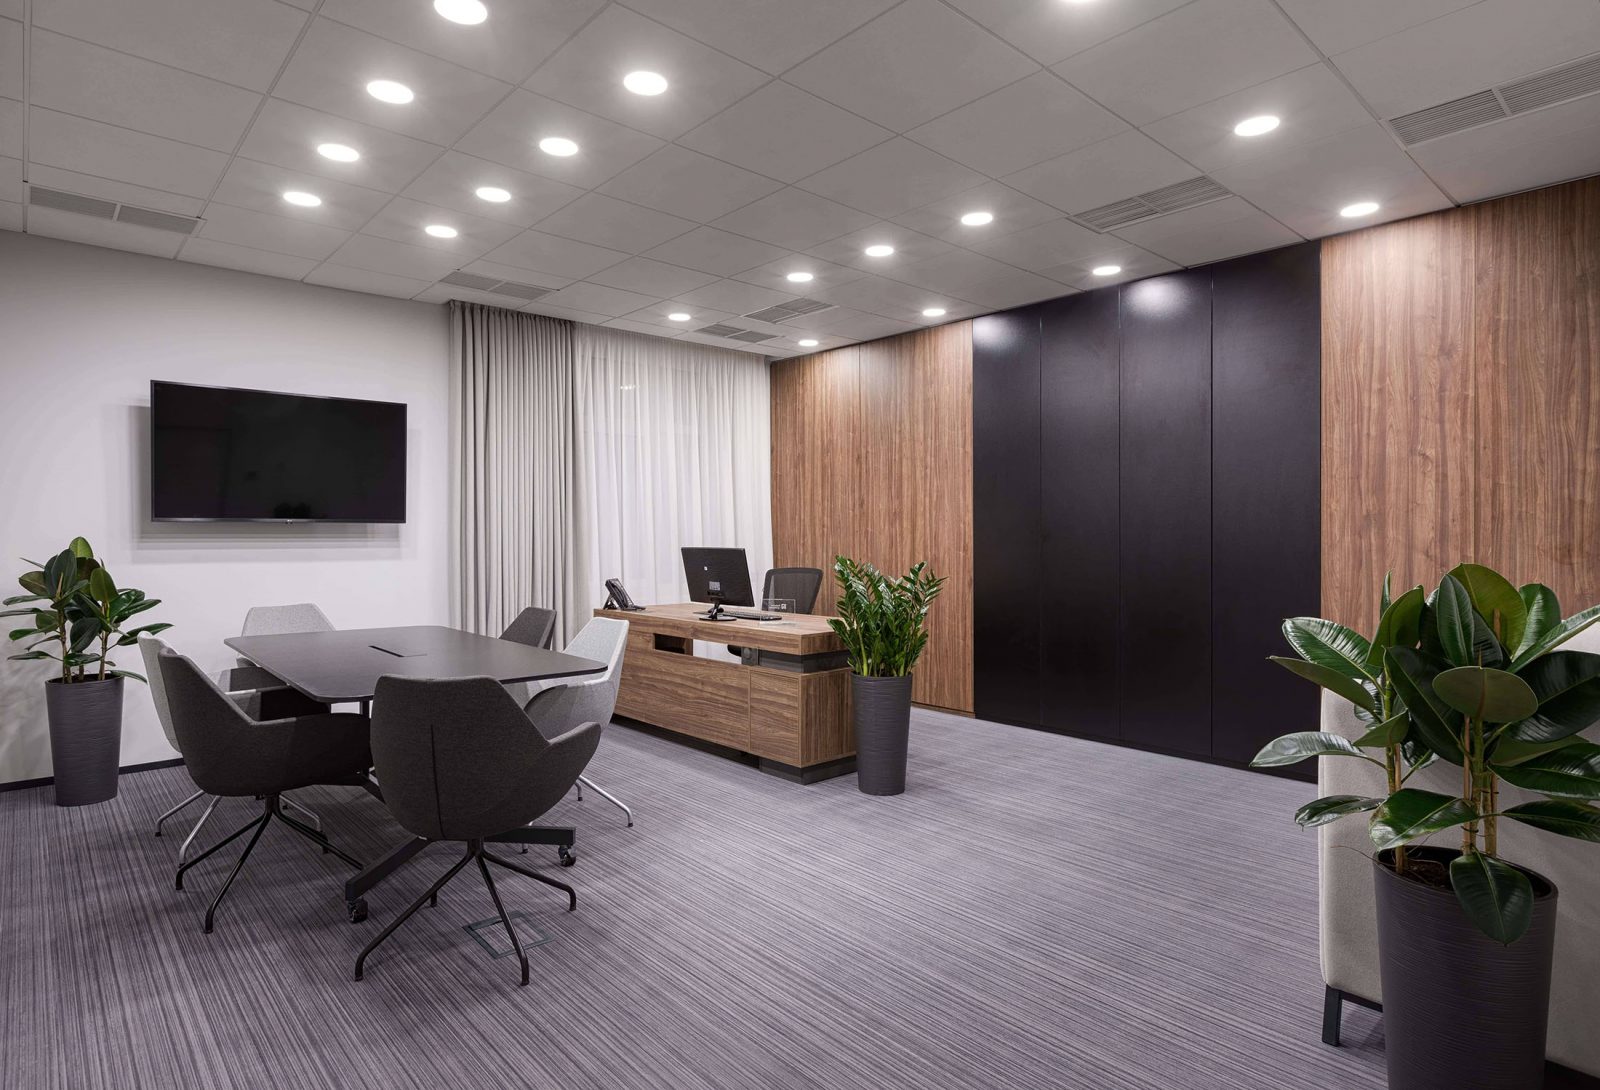 Workplace lighting focused on human comfort 5